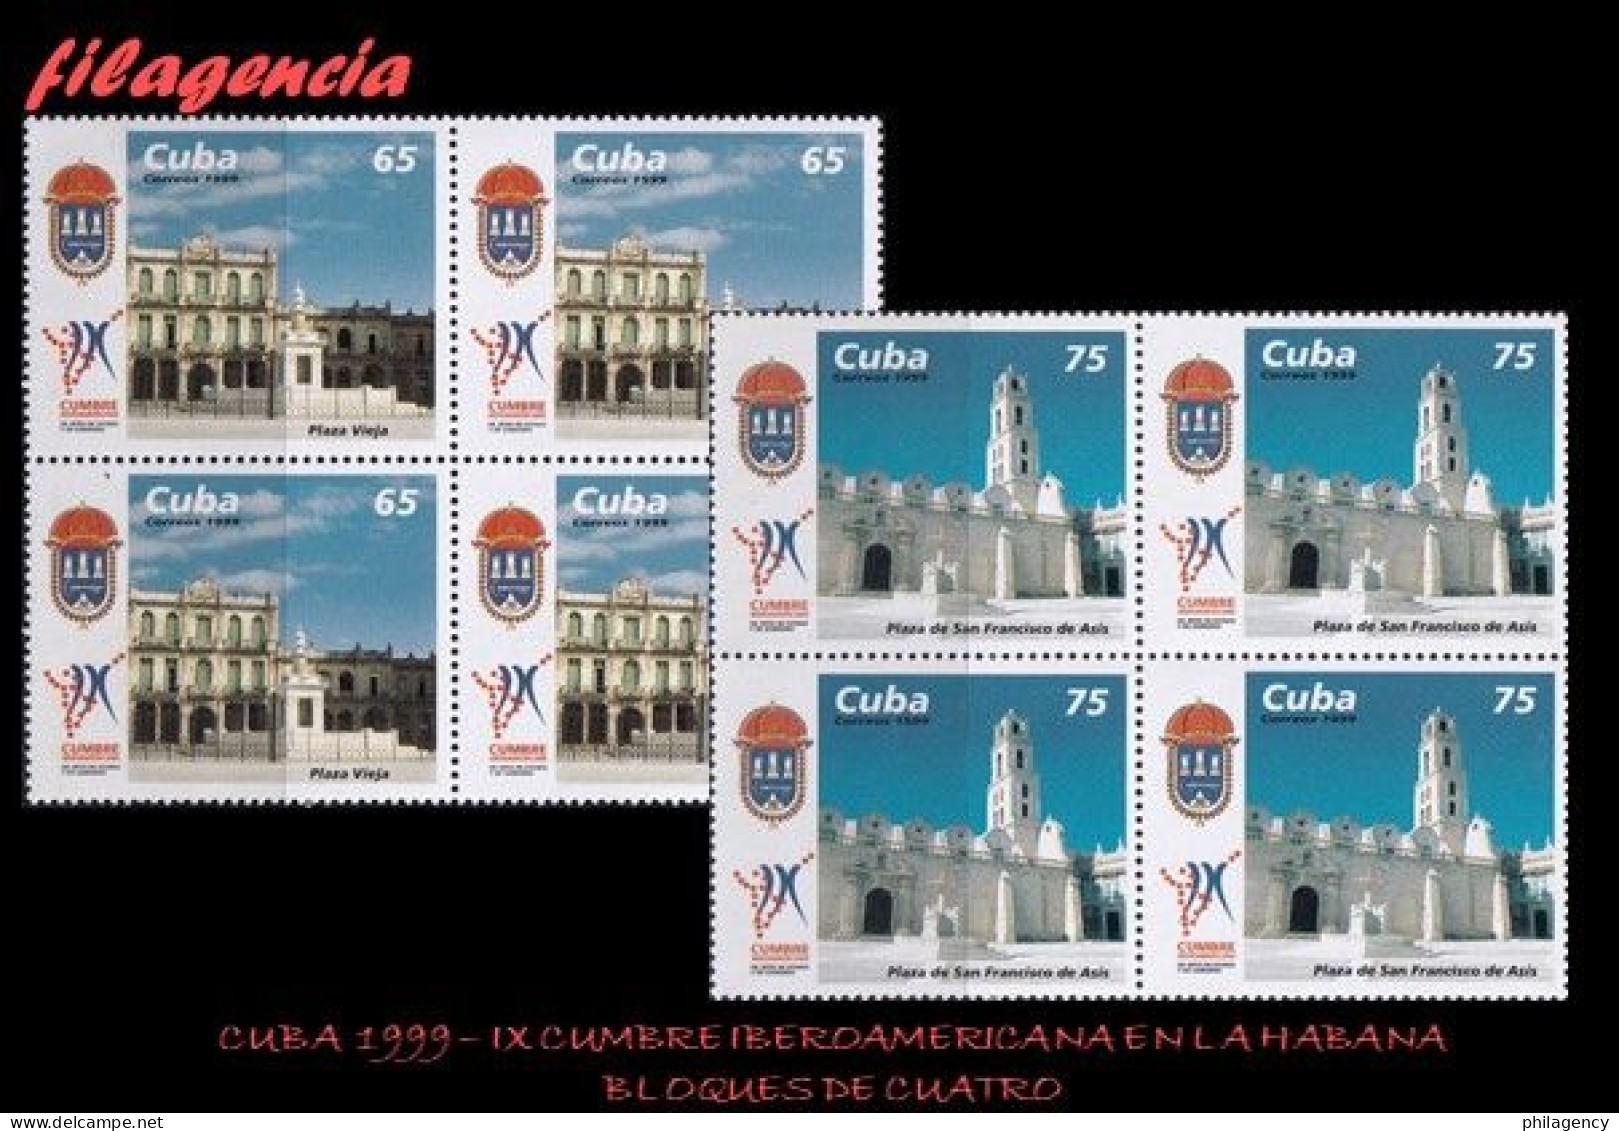 CUBA. BLOQUES DE CUATRO. 1999-27 IX CUMBRE IBEROAMERICANA DE JEFES DE ESTADO EN LA HABANA - Nuovi